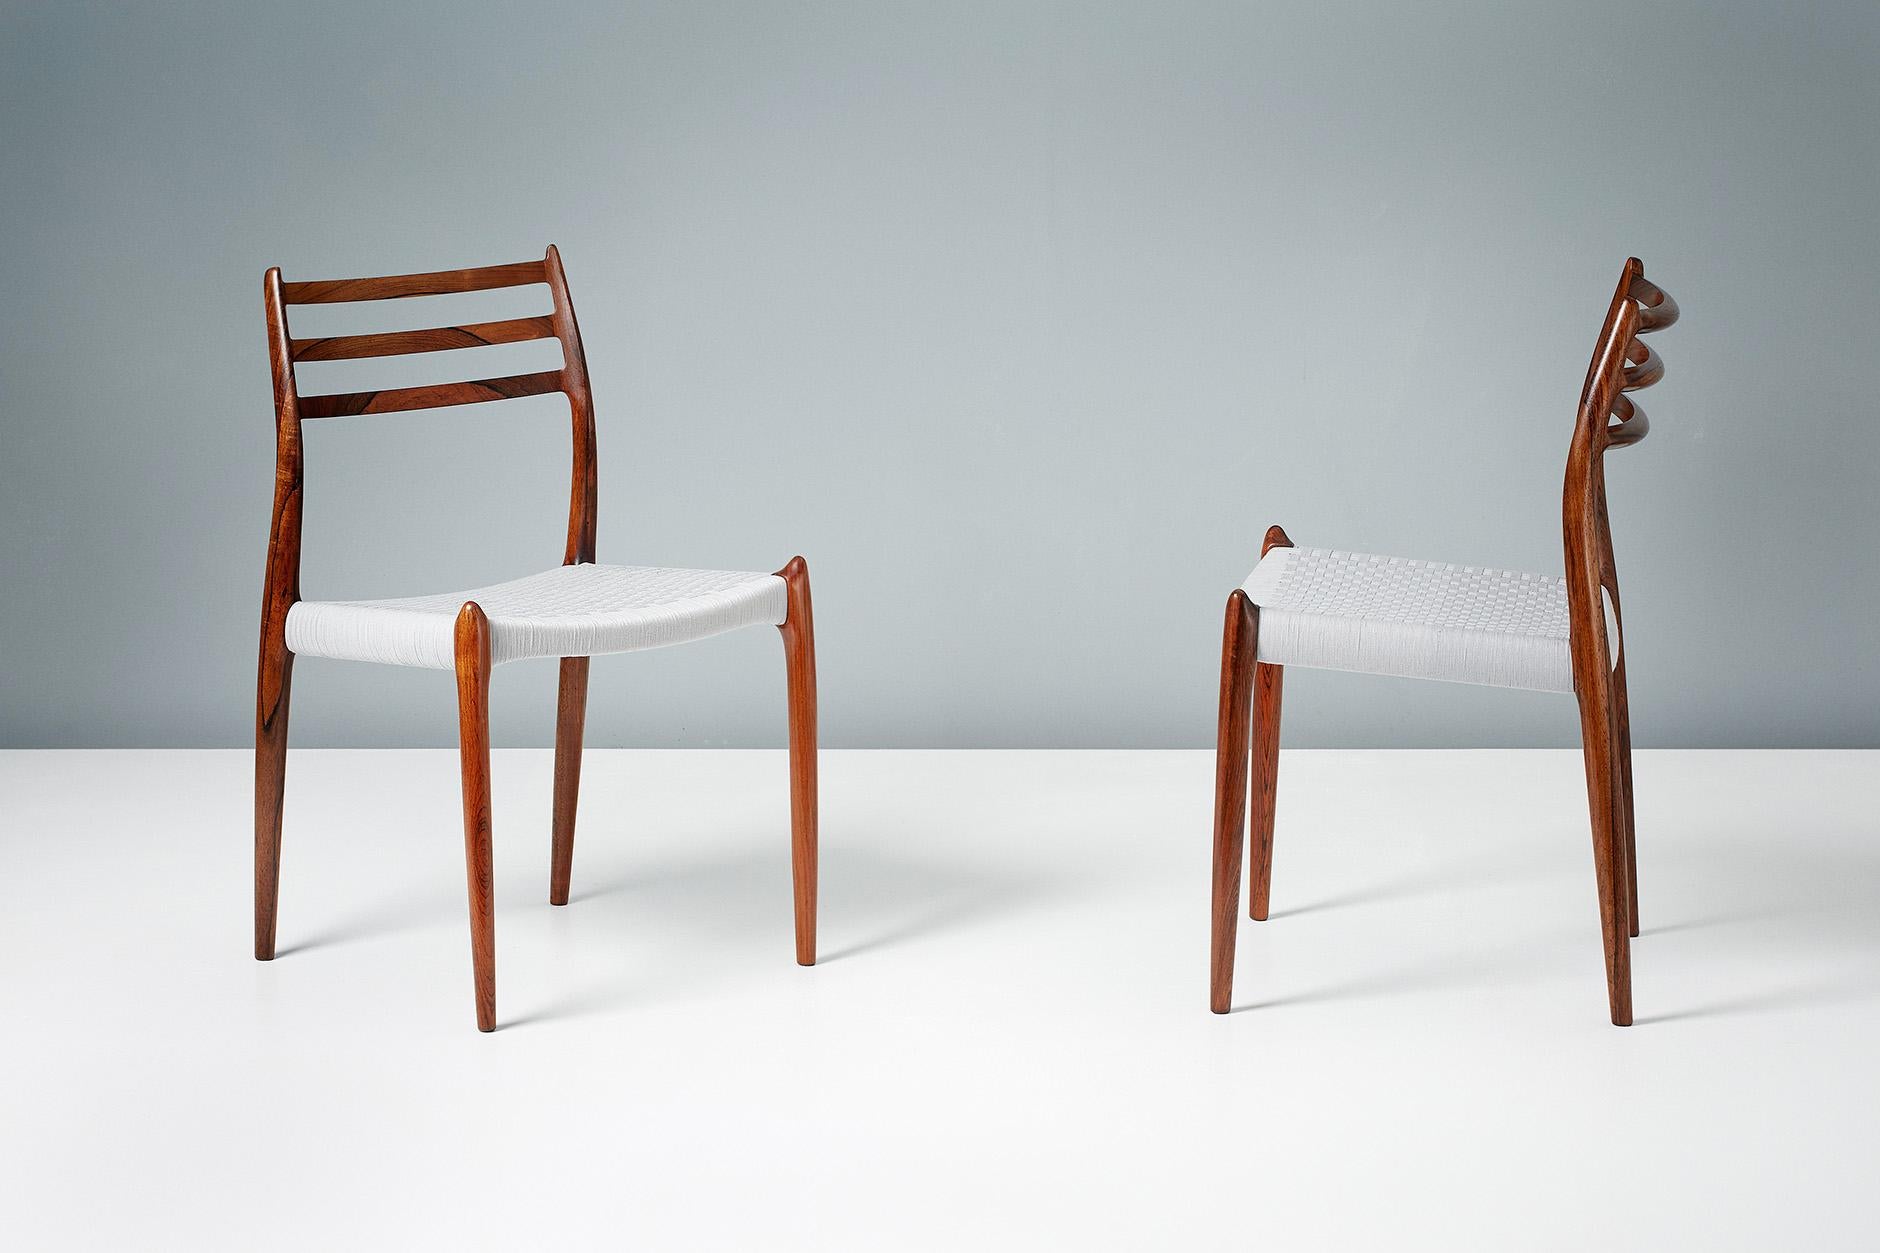 Niels O. Møller

Modell 78 Esszimmerstühle, 1962

Satz von 8 ikonischen Esszimmerstühlen Modell 78, entworfen von Niels O. Møller für J.L. Moller Mobelfabrik, Dänemark, 1962. Die Rahmen sind aus stark gemasertem, exquisitem brasilianischem